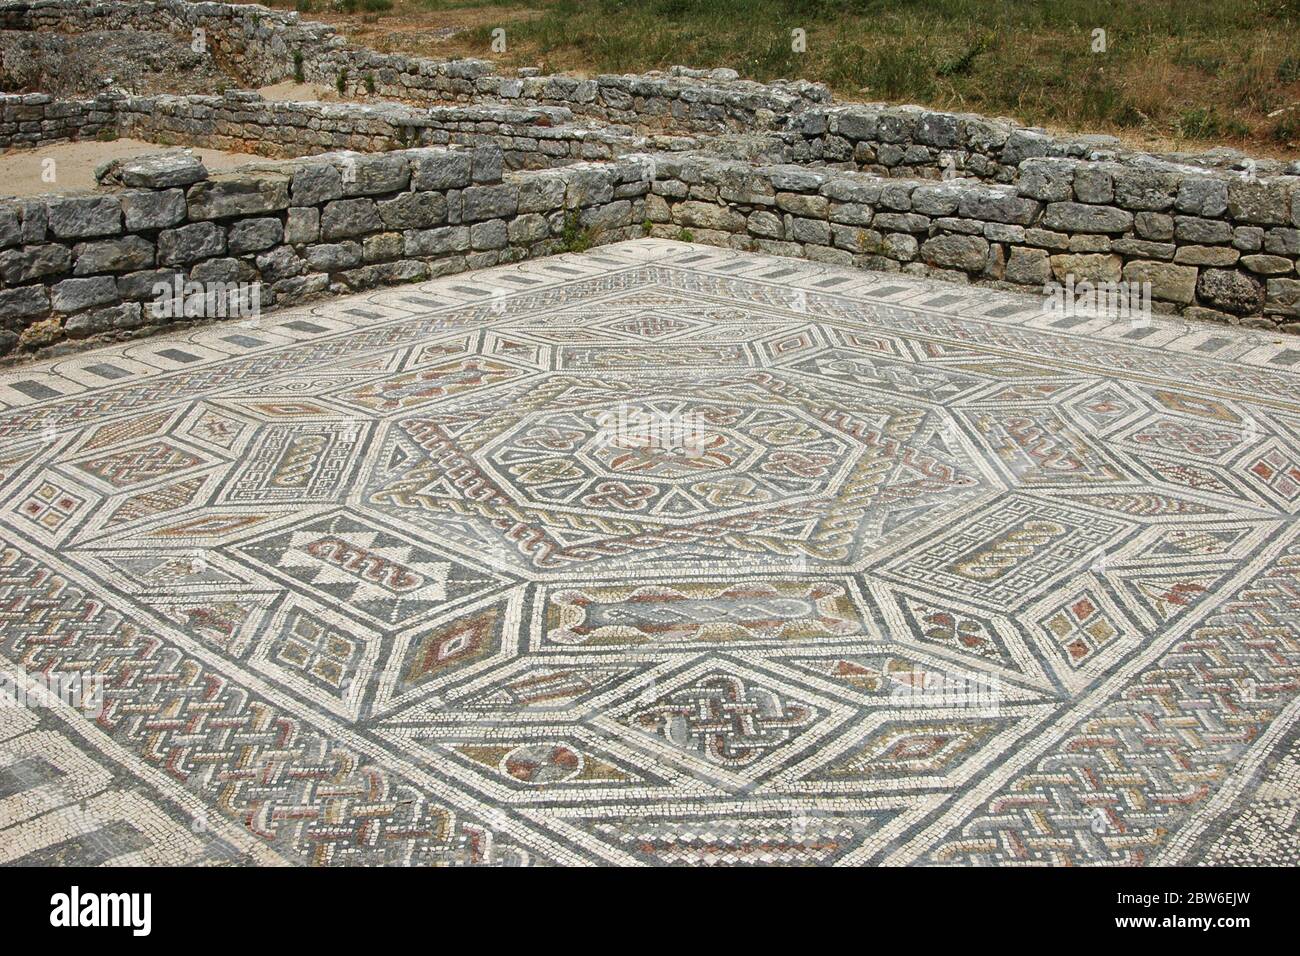 Mosaïque ancienne de plancher dans les ruines de la colonie romaine de Conimbriga situé à Condeixa-a-Nova également connu sous le nom de Condeixa, une ville et une municipalité dans le district de Coimbra, Portugal Banque D'Images